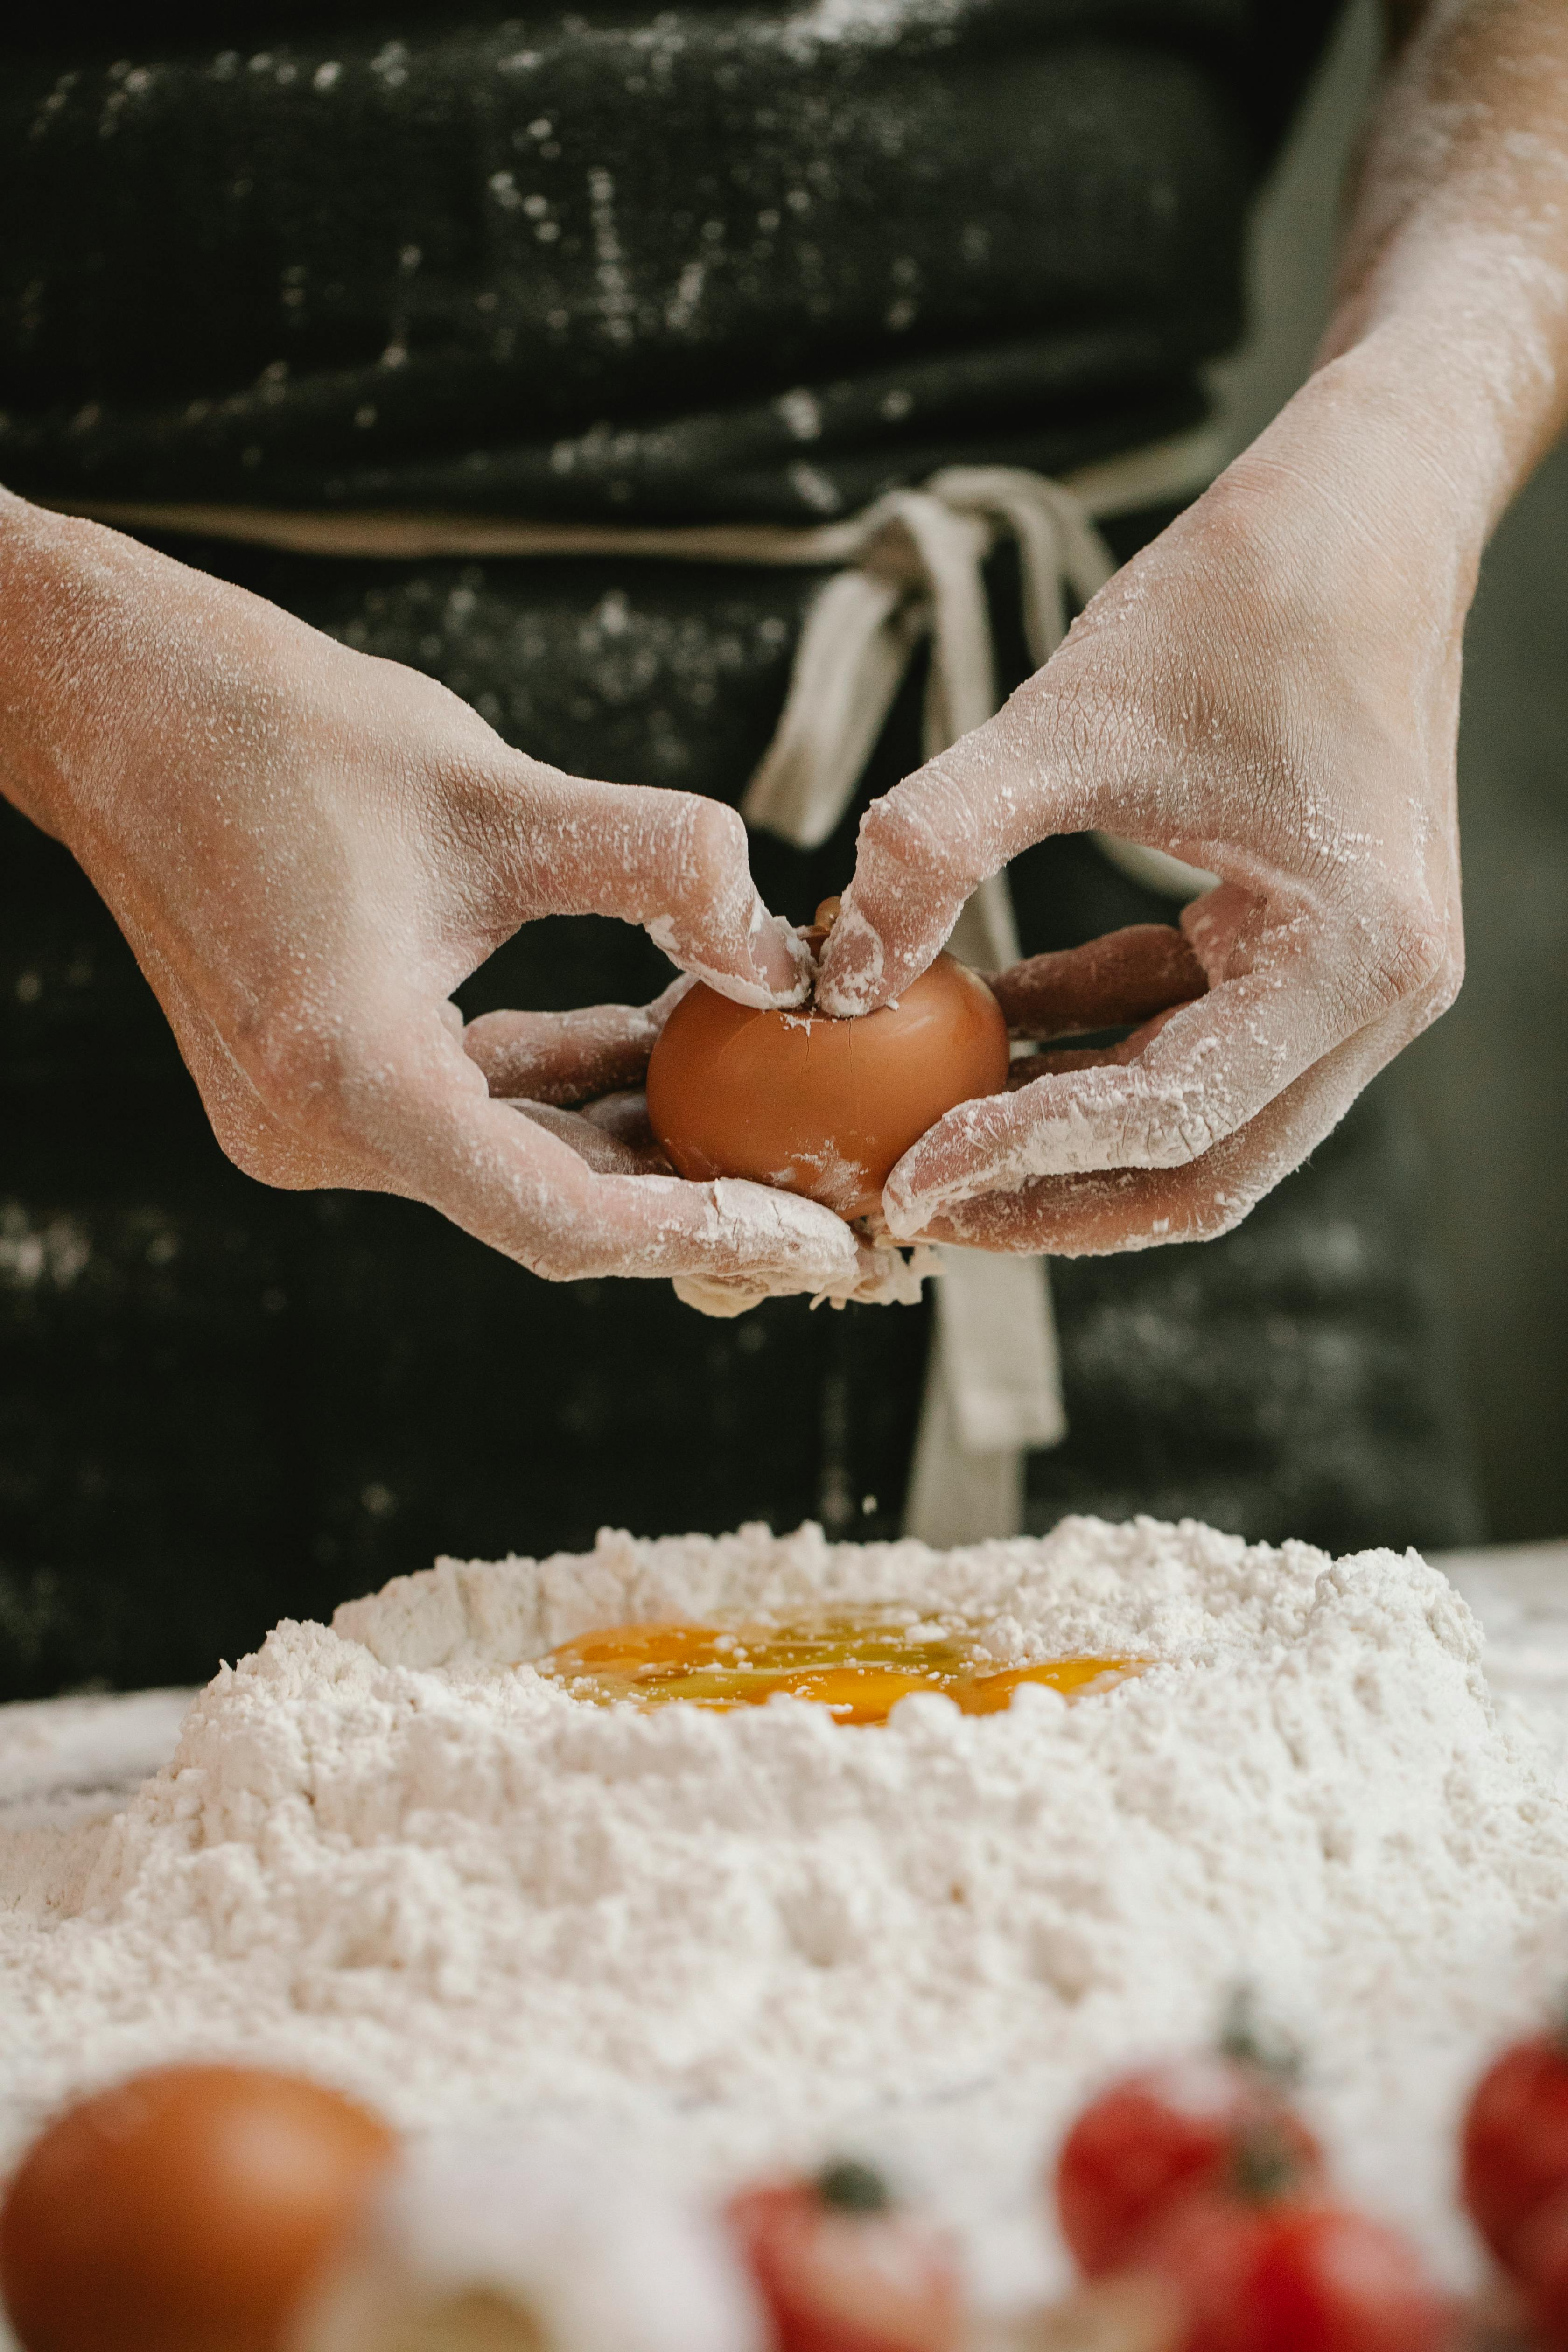 crop cook breaking egg into flour